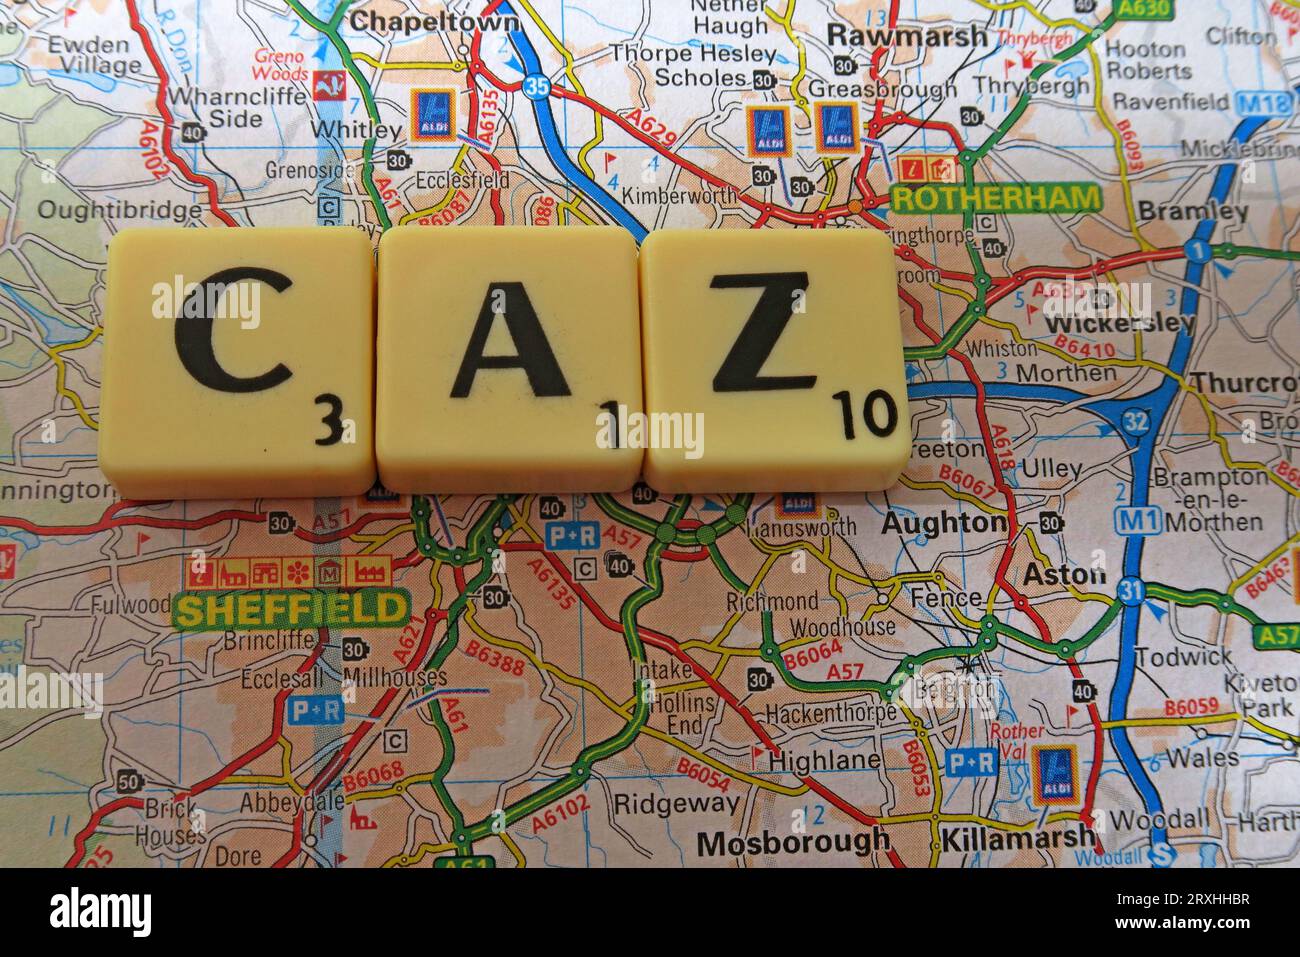 La zone d'air pur CAZ de Sheffield City - en mots, en lettres Scrabble sur une carte Banque D'Images